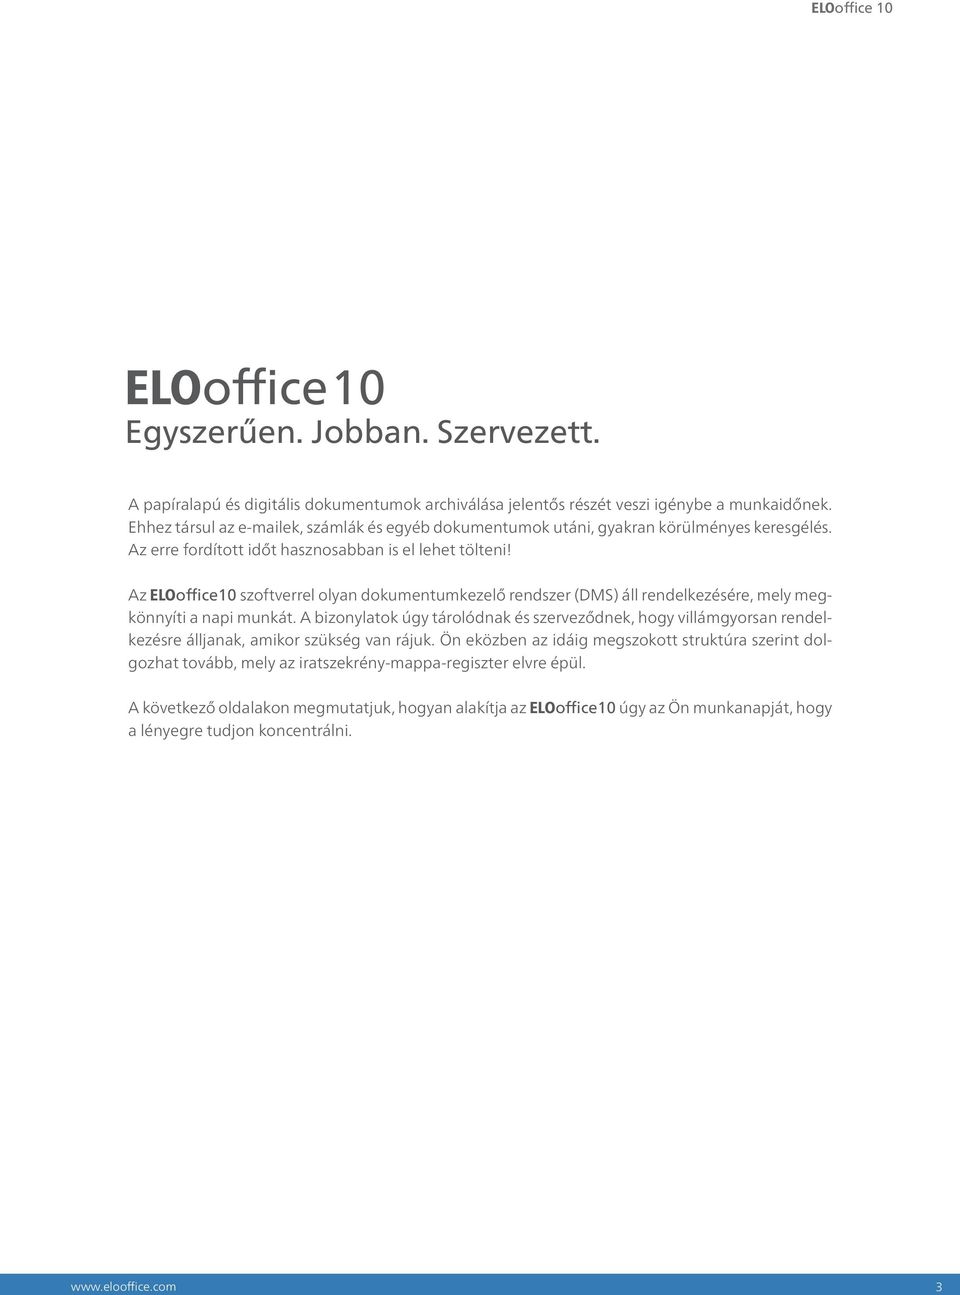 Az ELOoffice 10 szoftverrel olyan dokumentumkezelő rendszer (DMS) áll rendelkezésére, mely megkönnyíti a napi munkát.